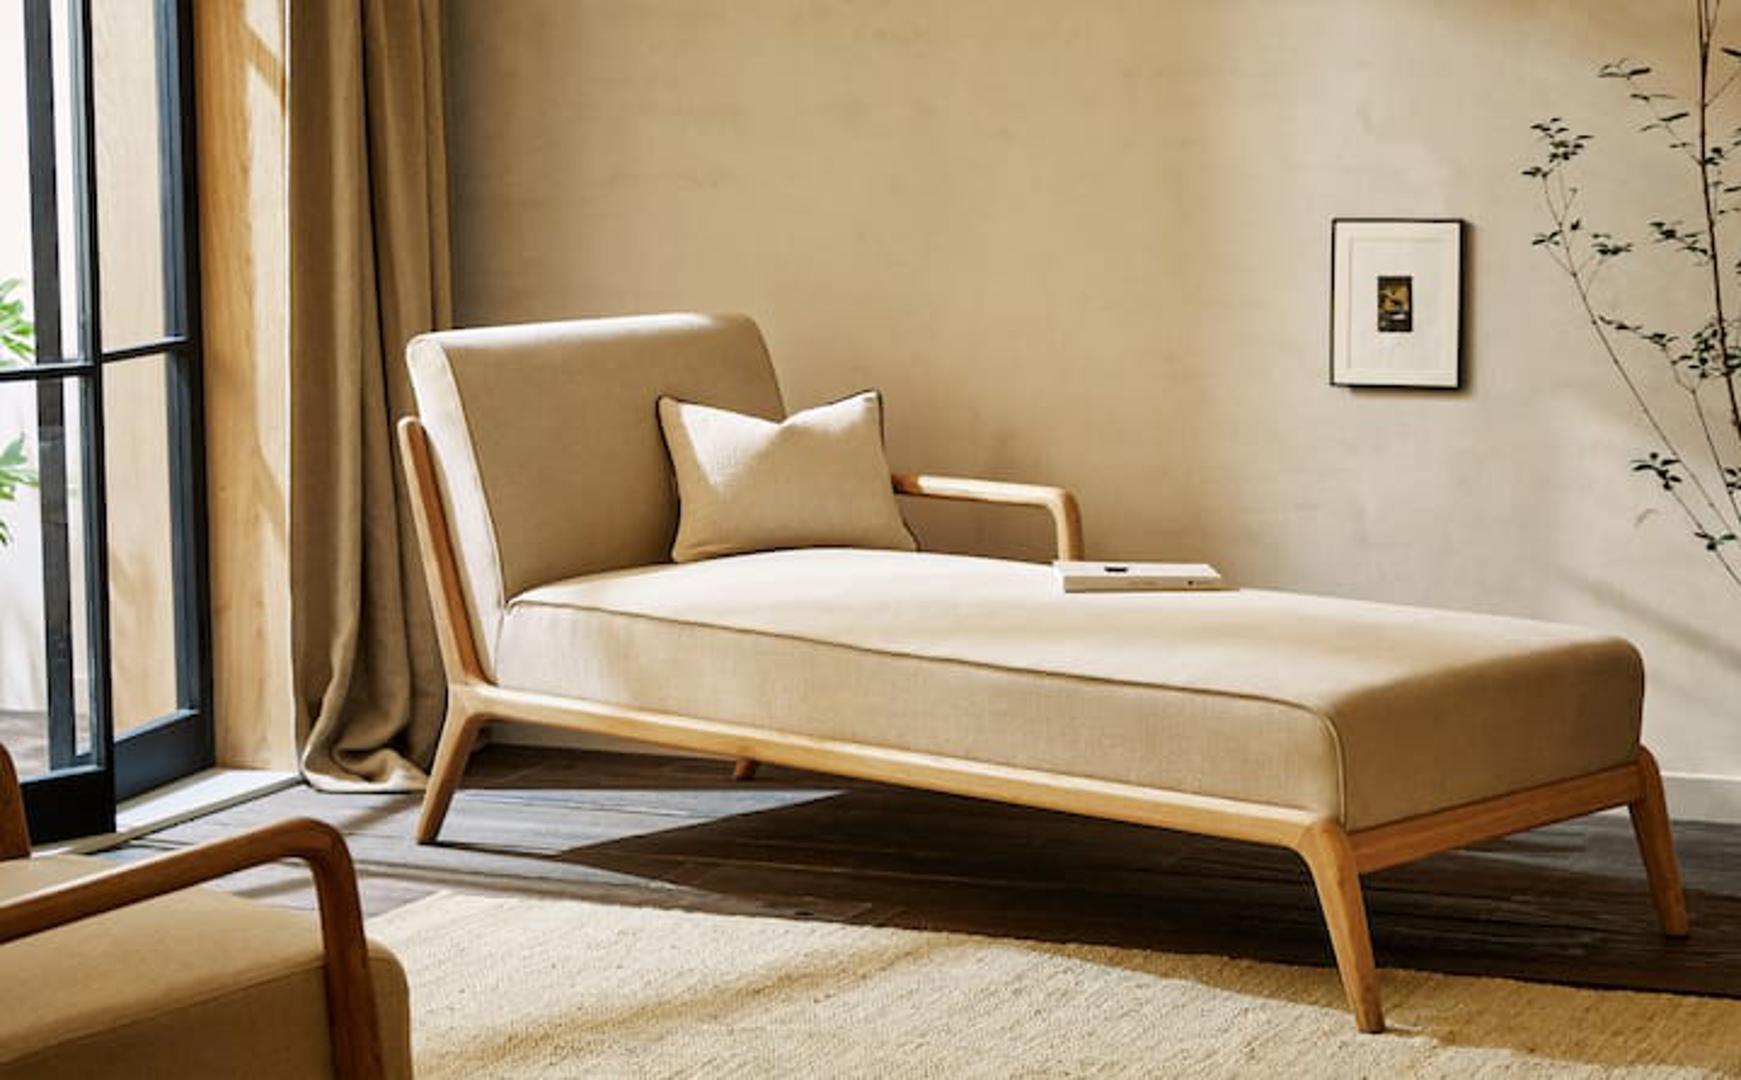 Nova, ljetna Zara Home kolekcija prepuna je odličnih lanenih detalja - od zavjesa, premo stolnjaka pa sve do tepiha i fotelja presvučenih ovim prirodnim materijalom